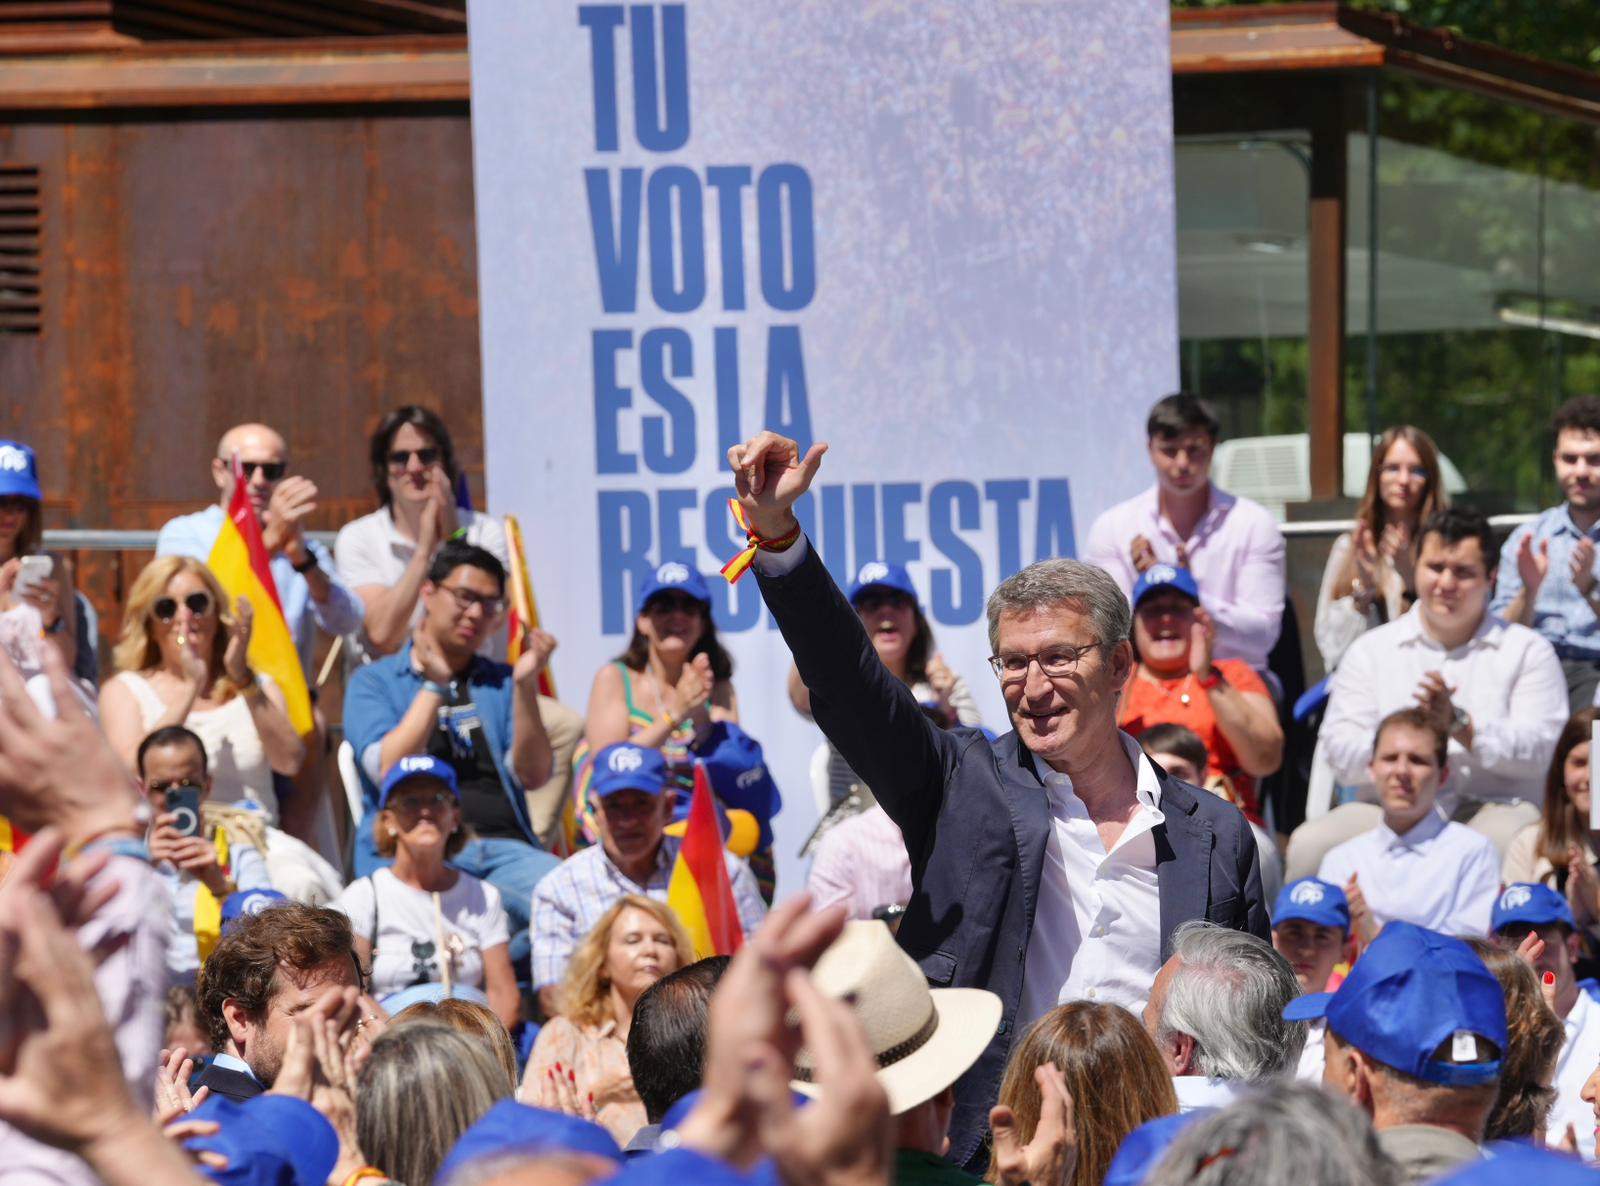 Feijóo cuestiona al PSOE haber conseguido el fin del procés: "¿Por qué ahora piden un referéndum?"